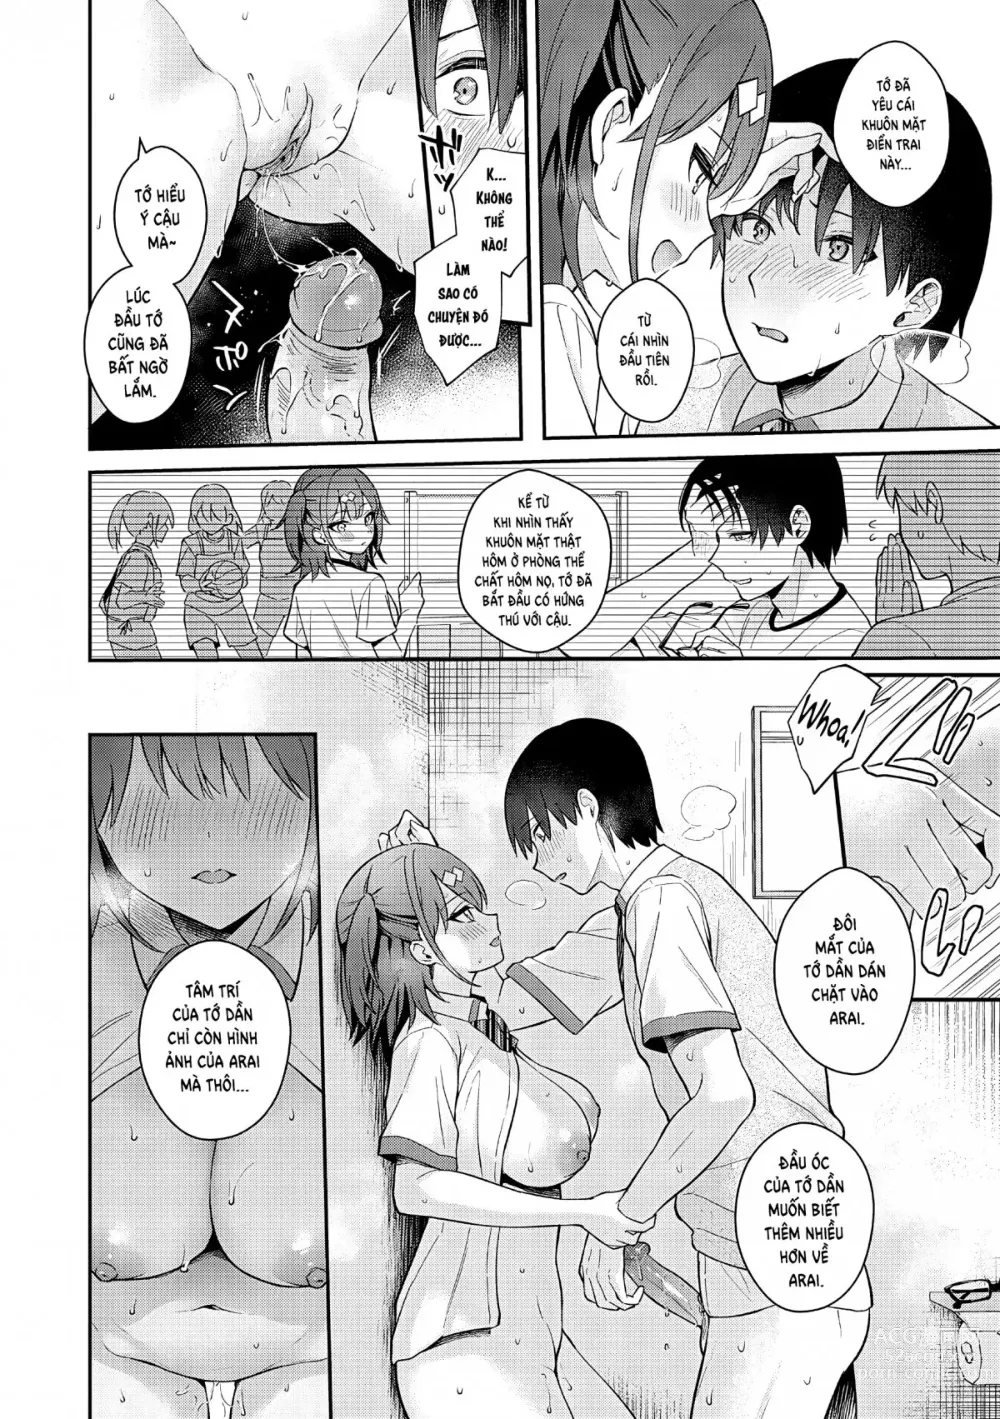 Page 19 of manga Tuyệt hơn cả giả tưởng (decensored)